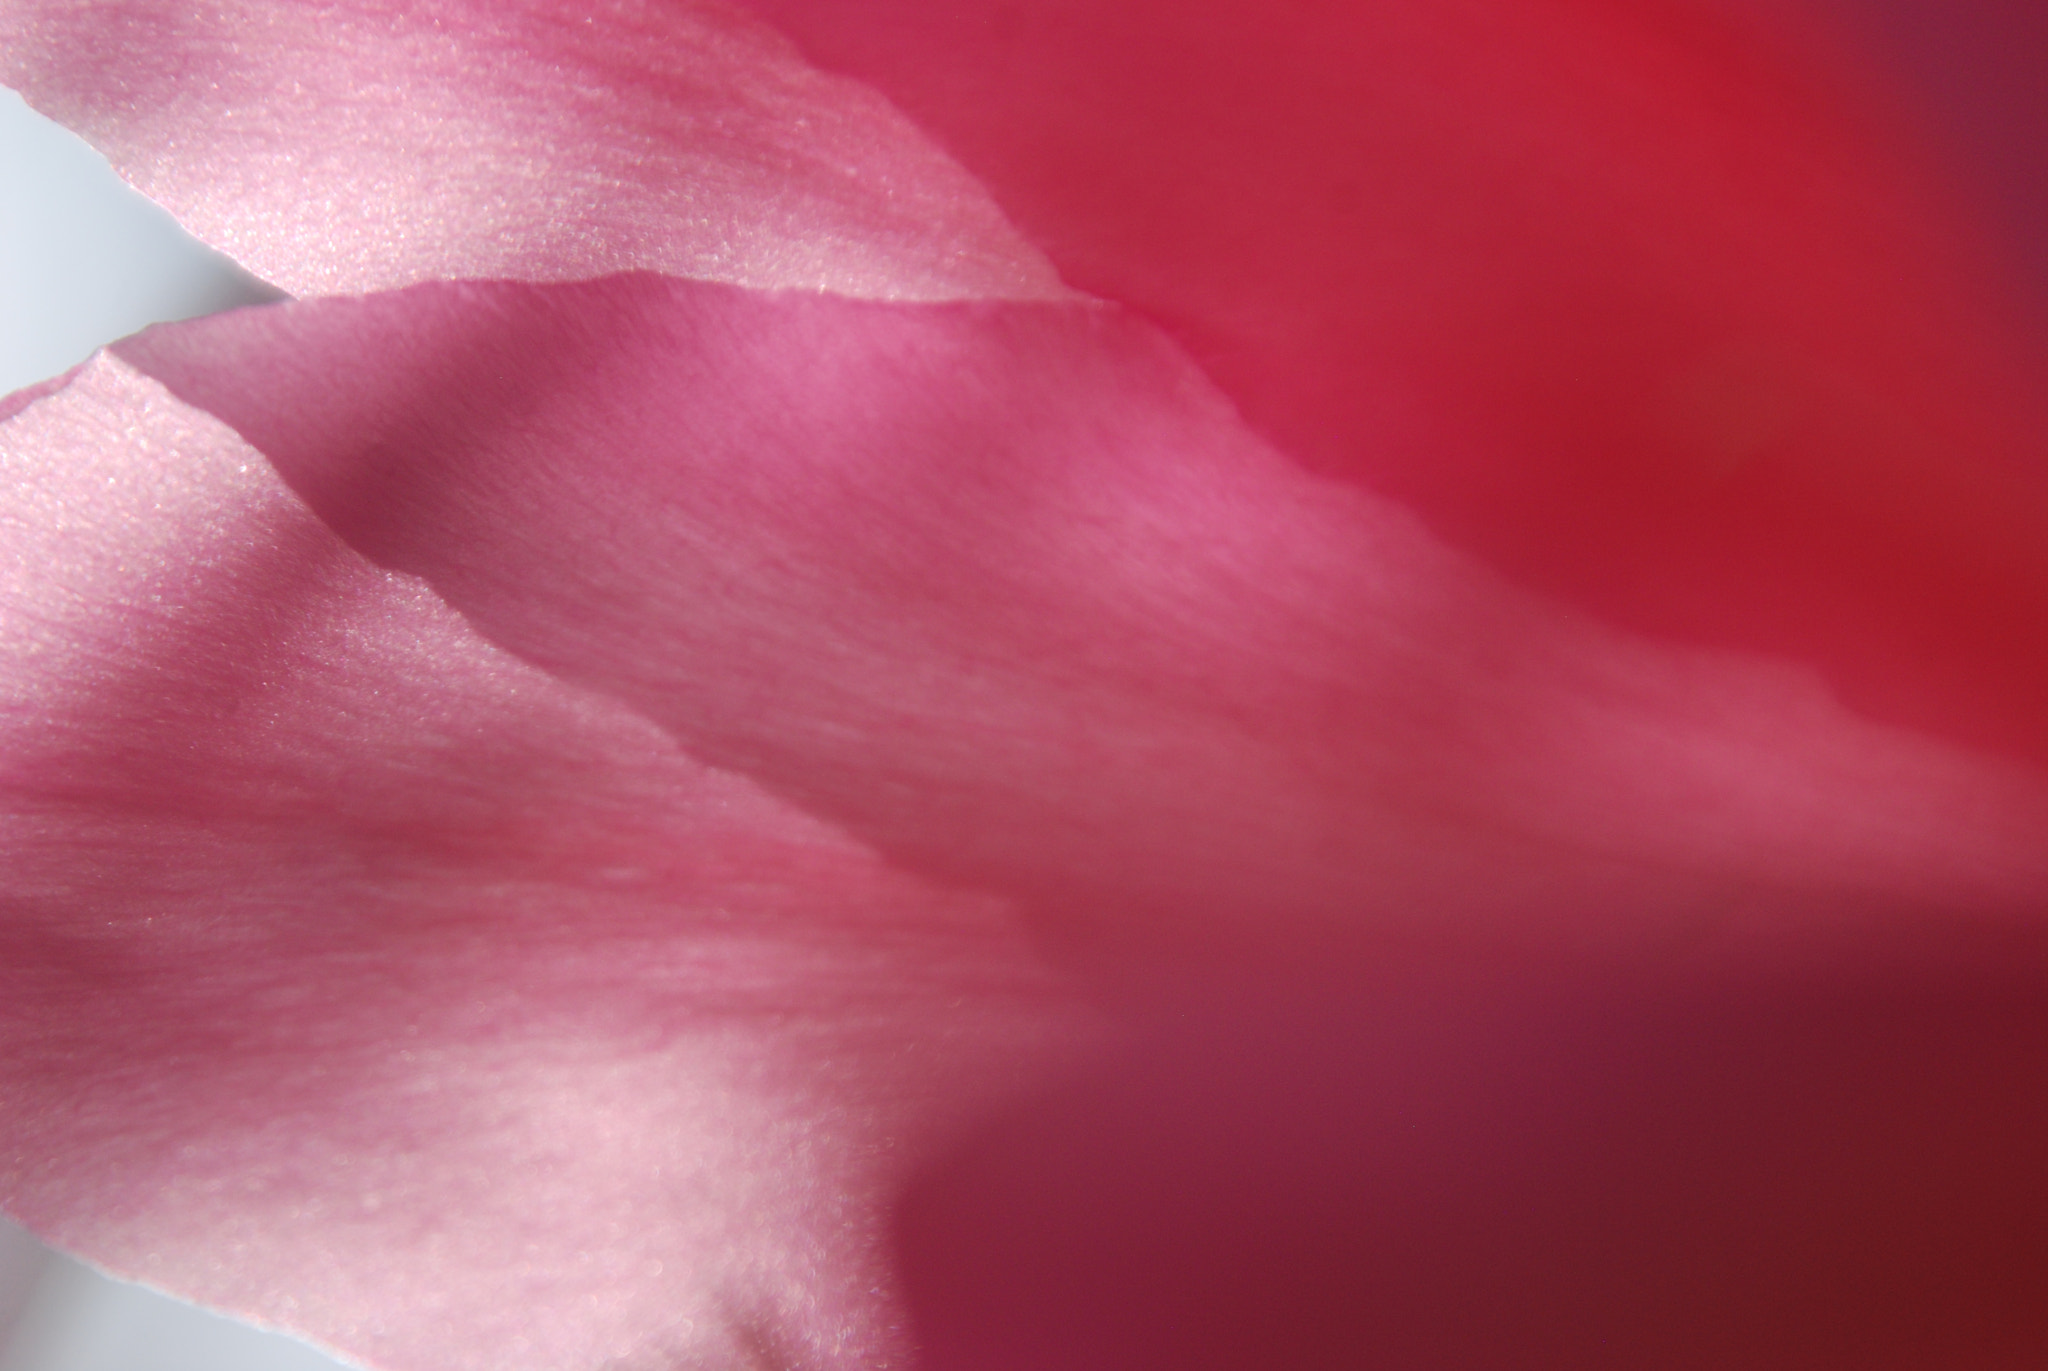 Nikon D80 sample photo. Pink petals, 2018 photography